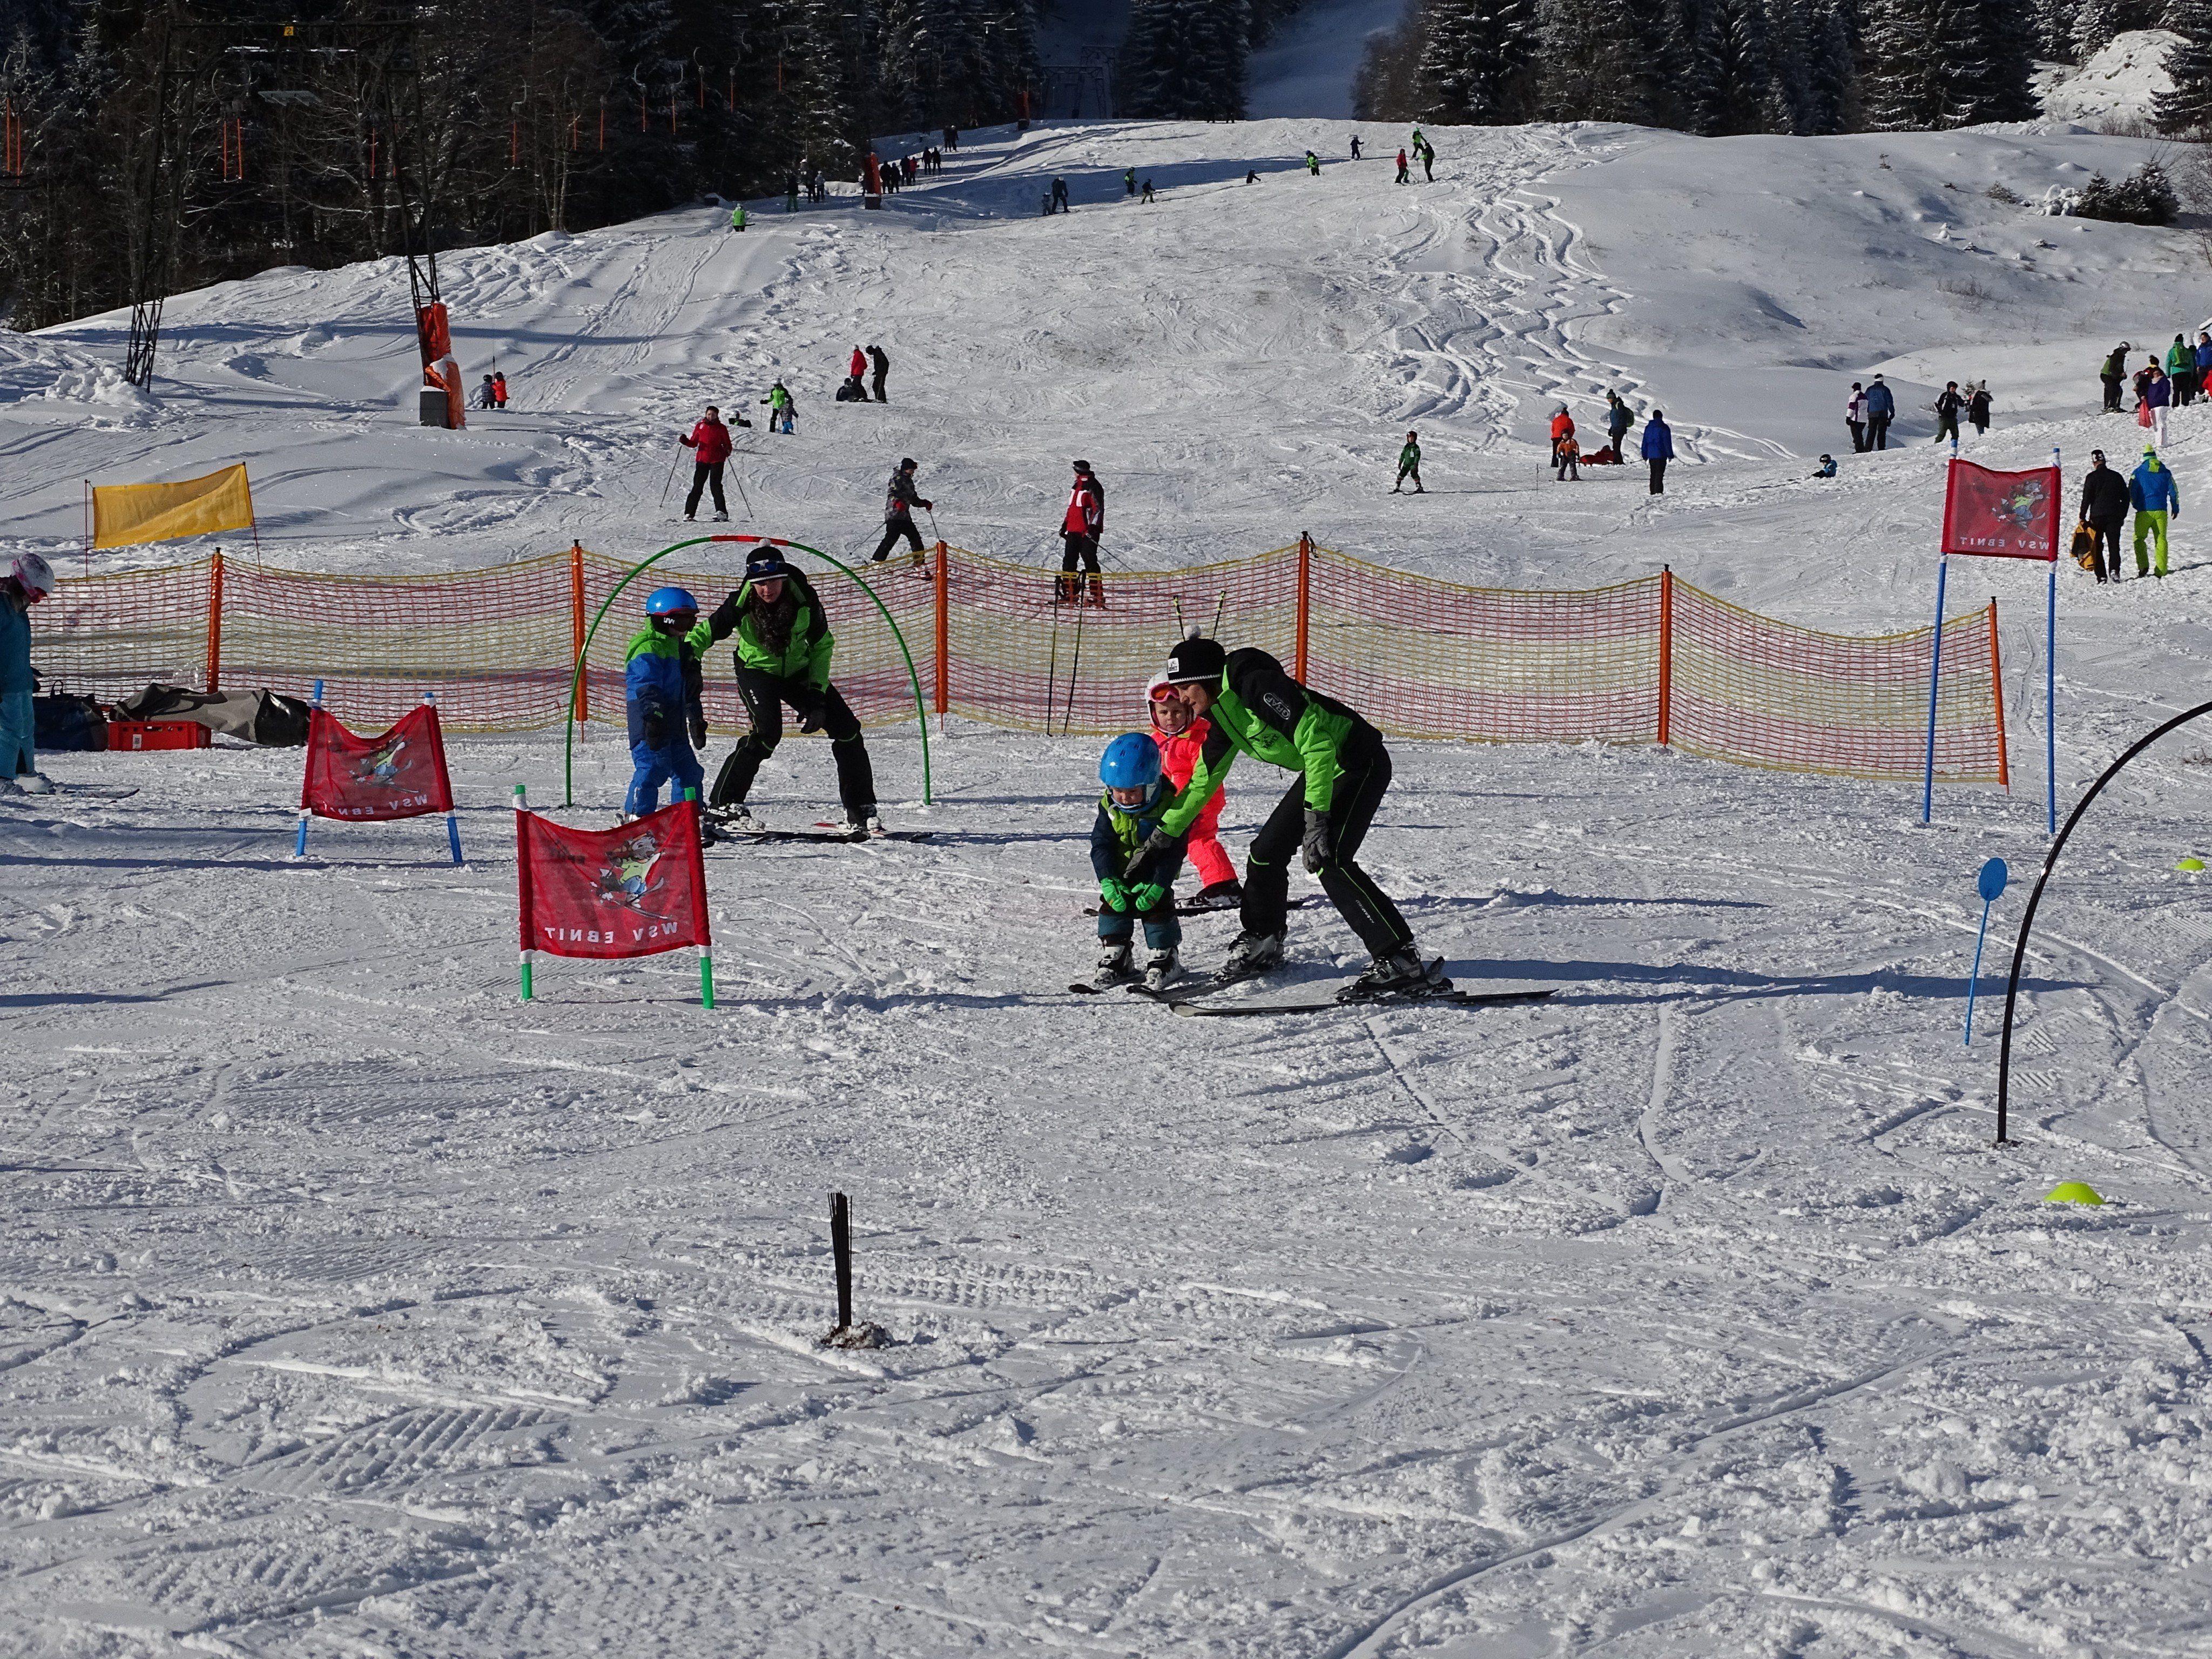 Im familienfreundlichen Skigebieten Ebnit gibt es an diesem Tag ein attraktives Ski- und Schneeerlebnisprogramm.